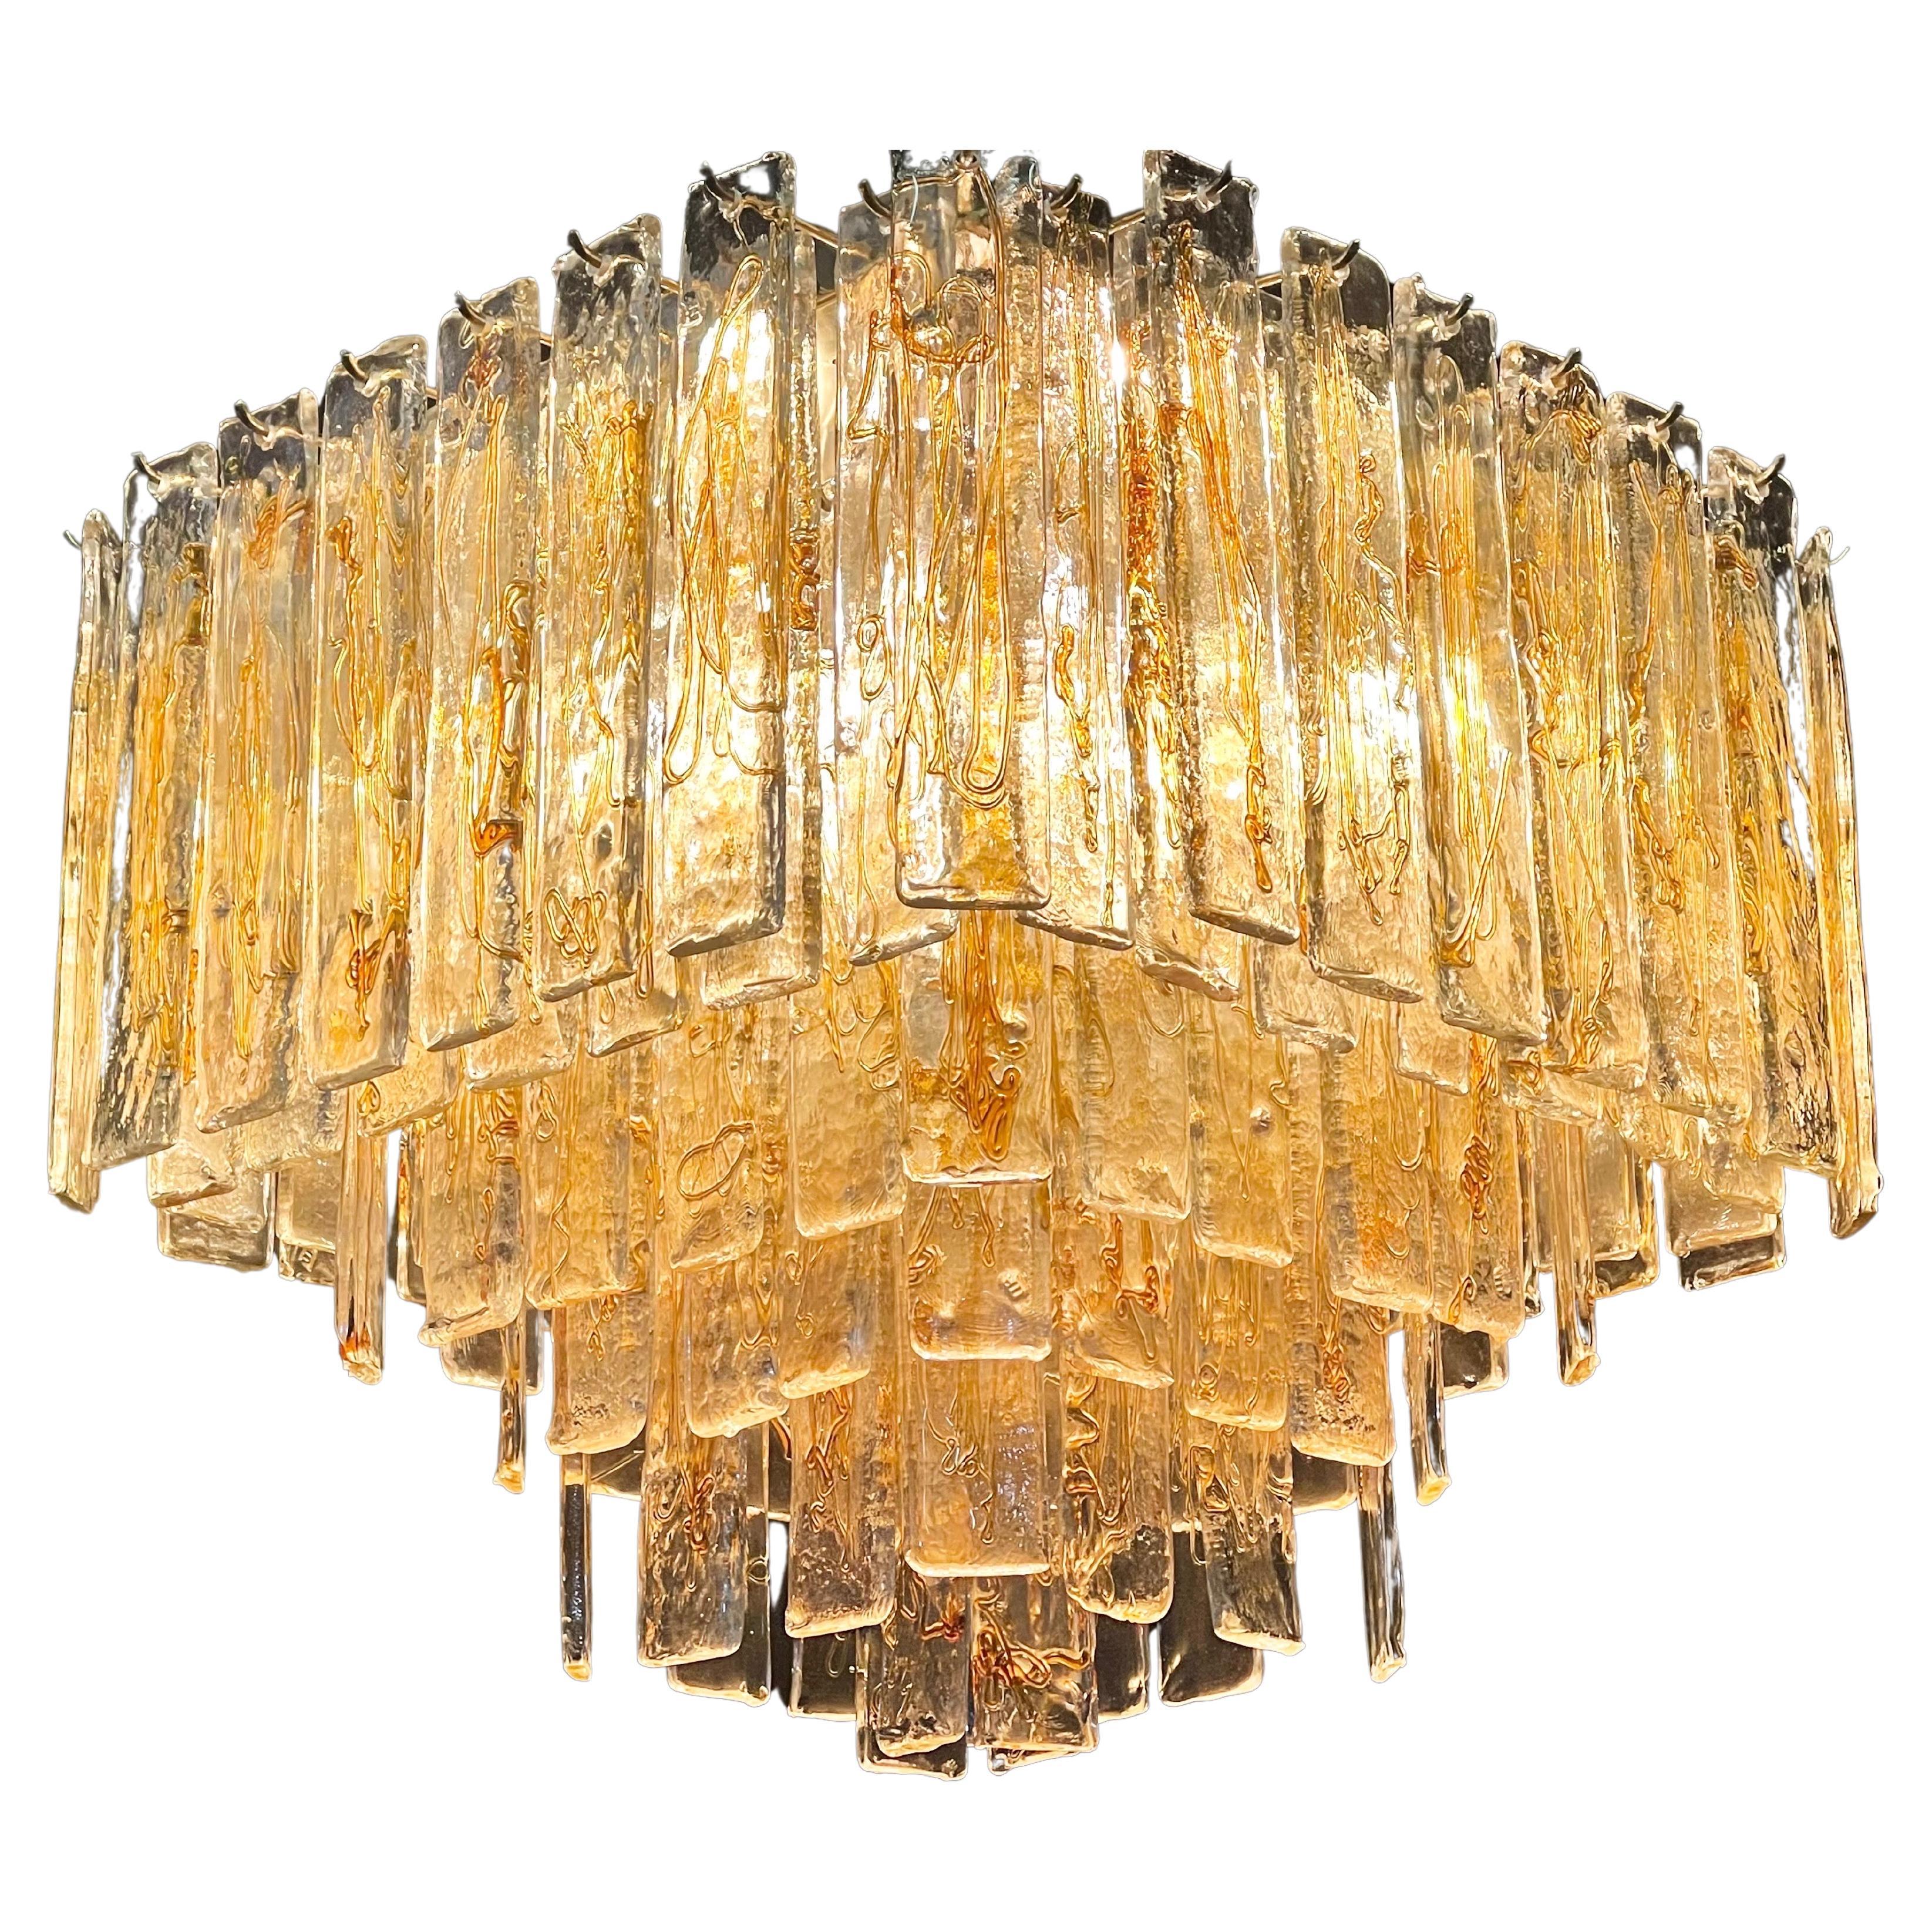 Rare encastré en verre de Murano de style nouille ambrée, datant du milieu du siècle, par Venini ou Mazzega, Italie, vers les années 1960.
Le lustre est composé de plus de 100 éléments en verre Murano Mazzega et d'une armature en métal